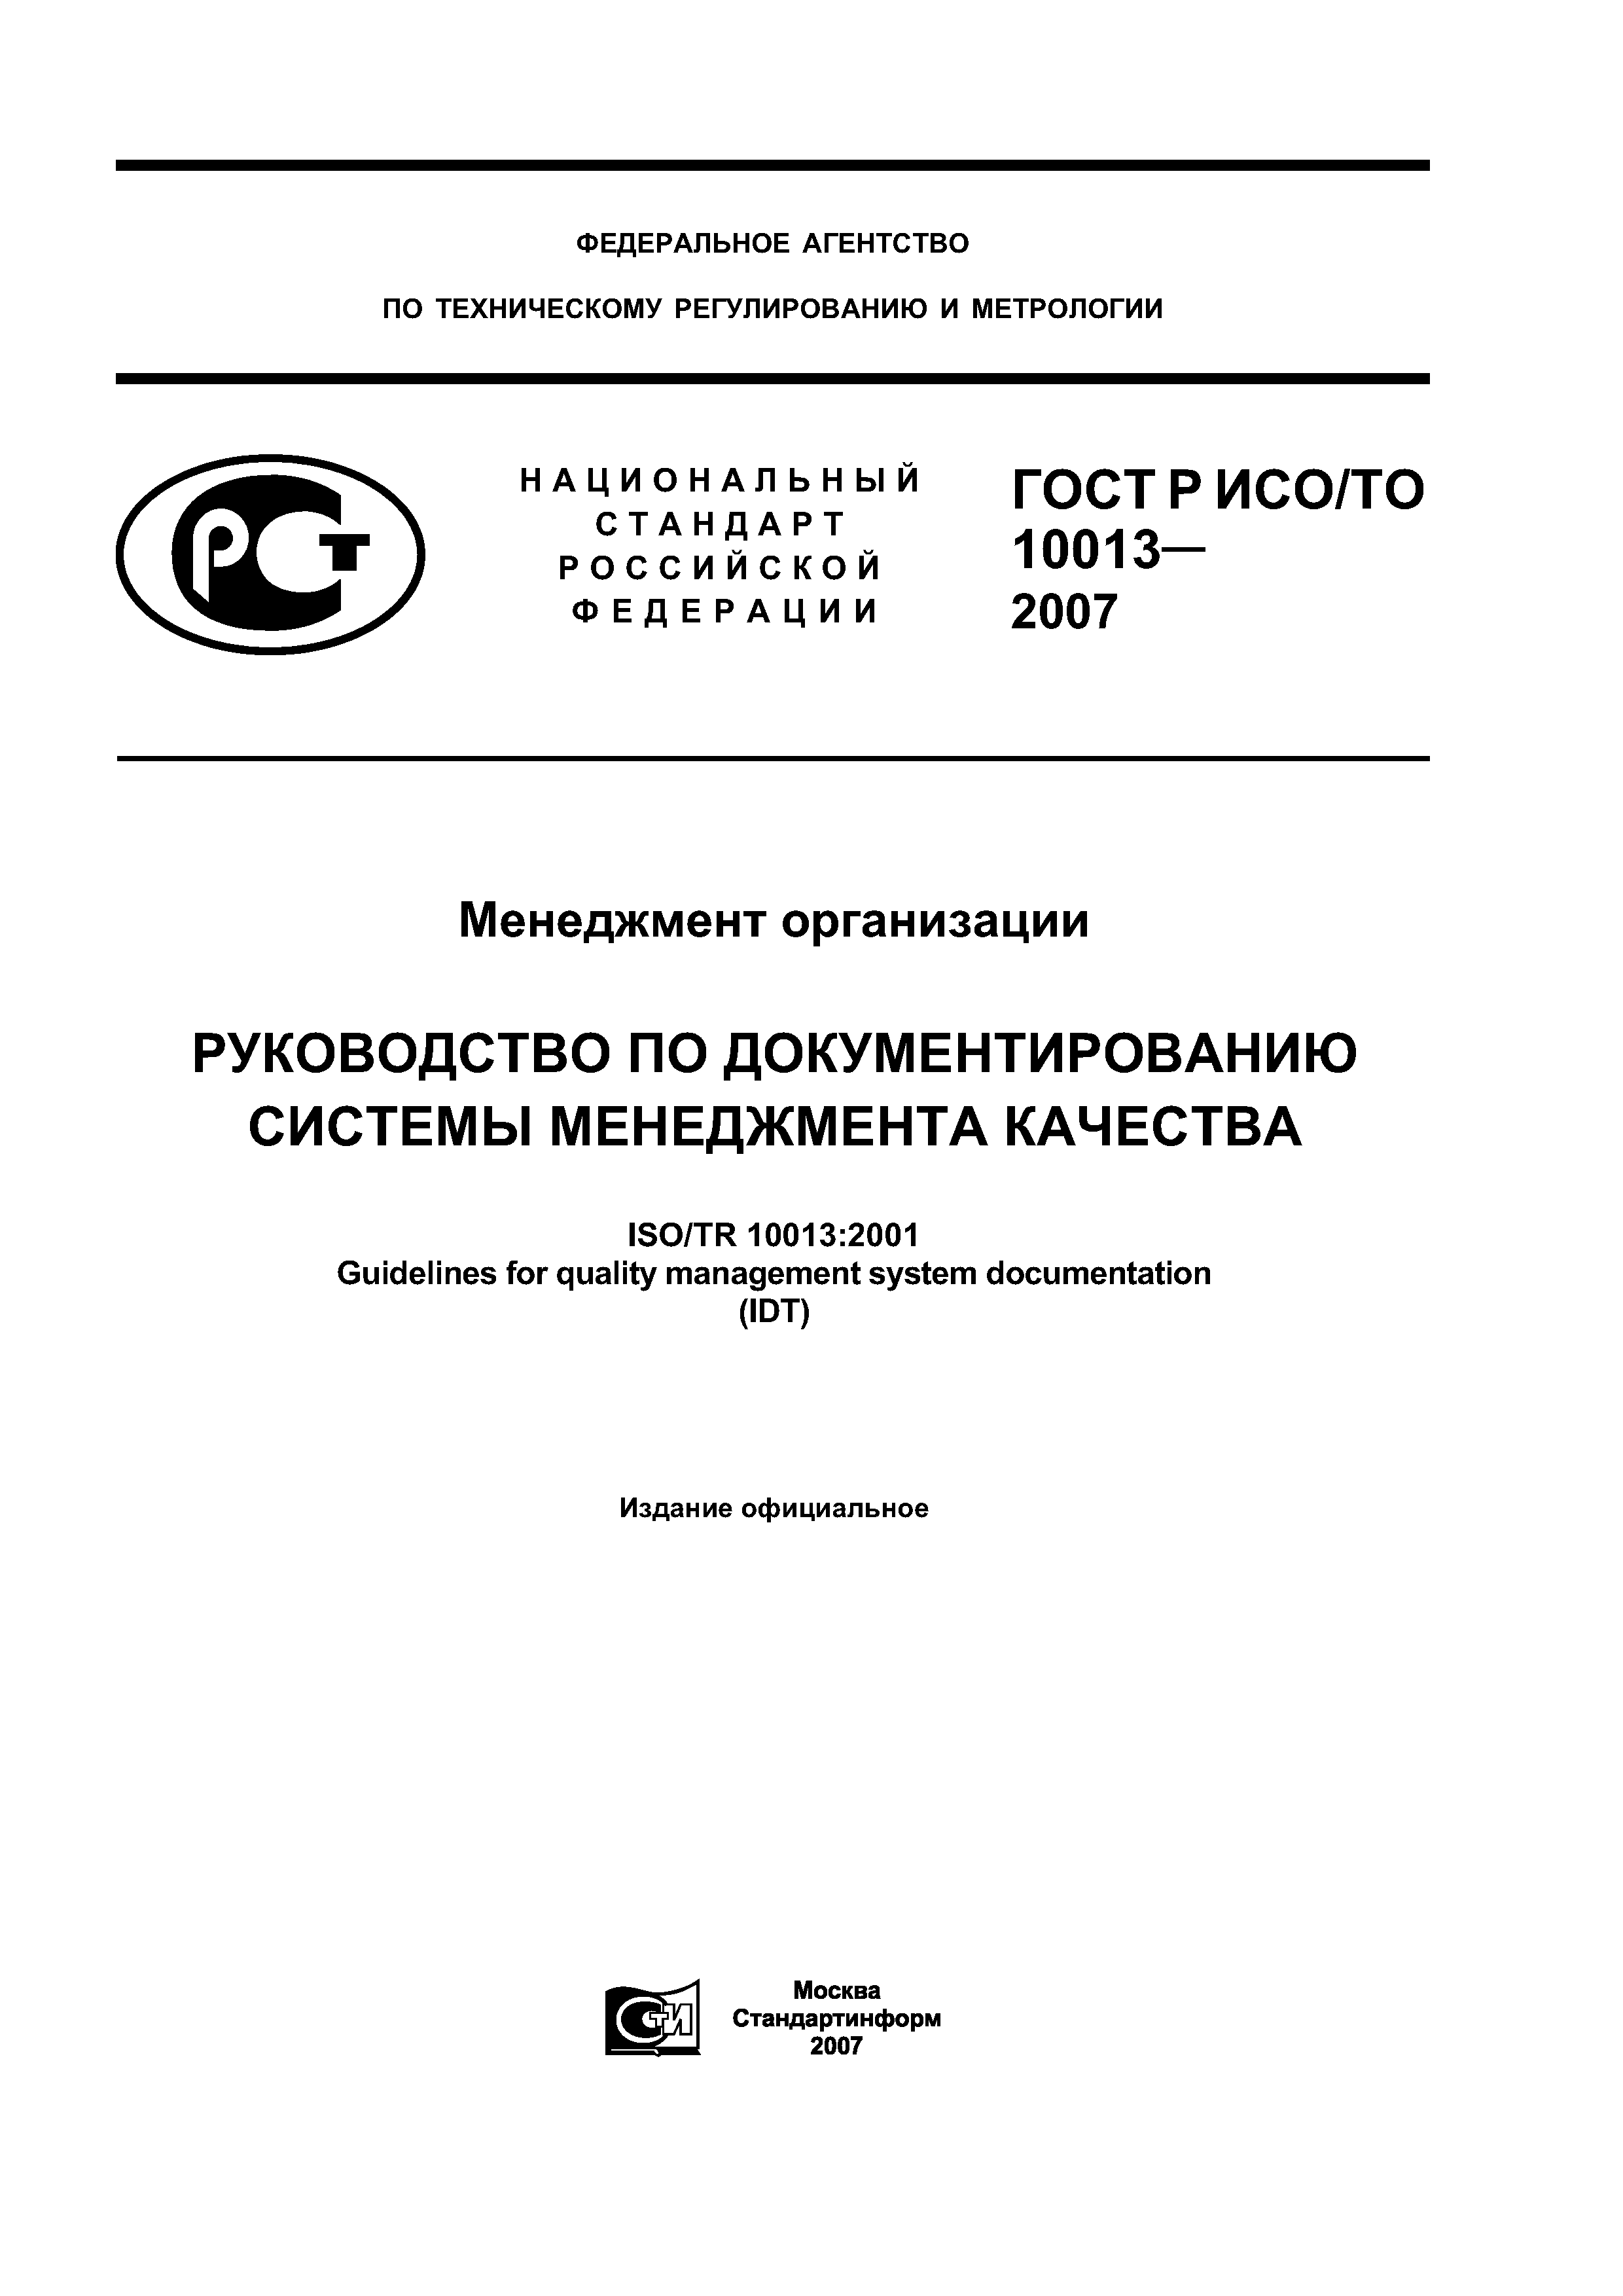 ГОСТ Р ИСО/ТО 10013-2007